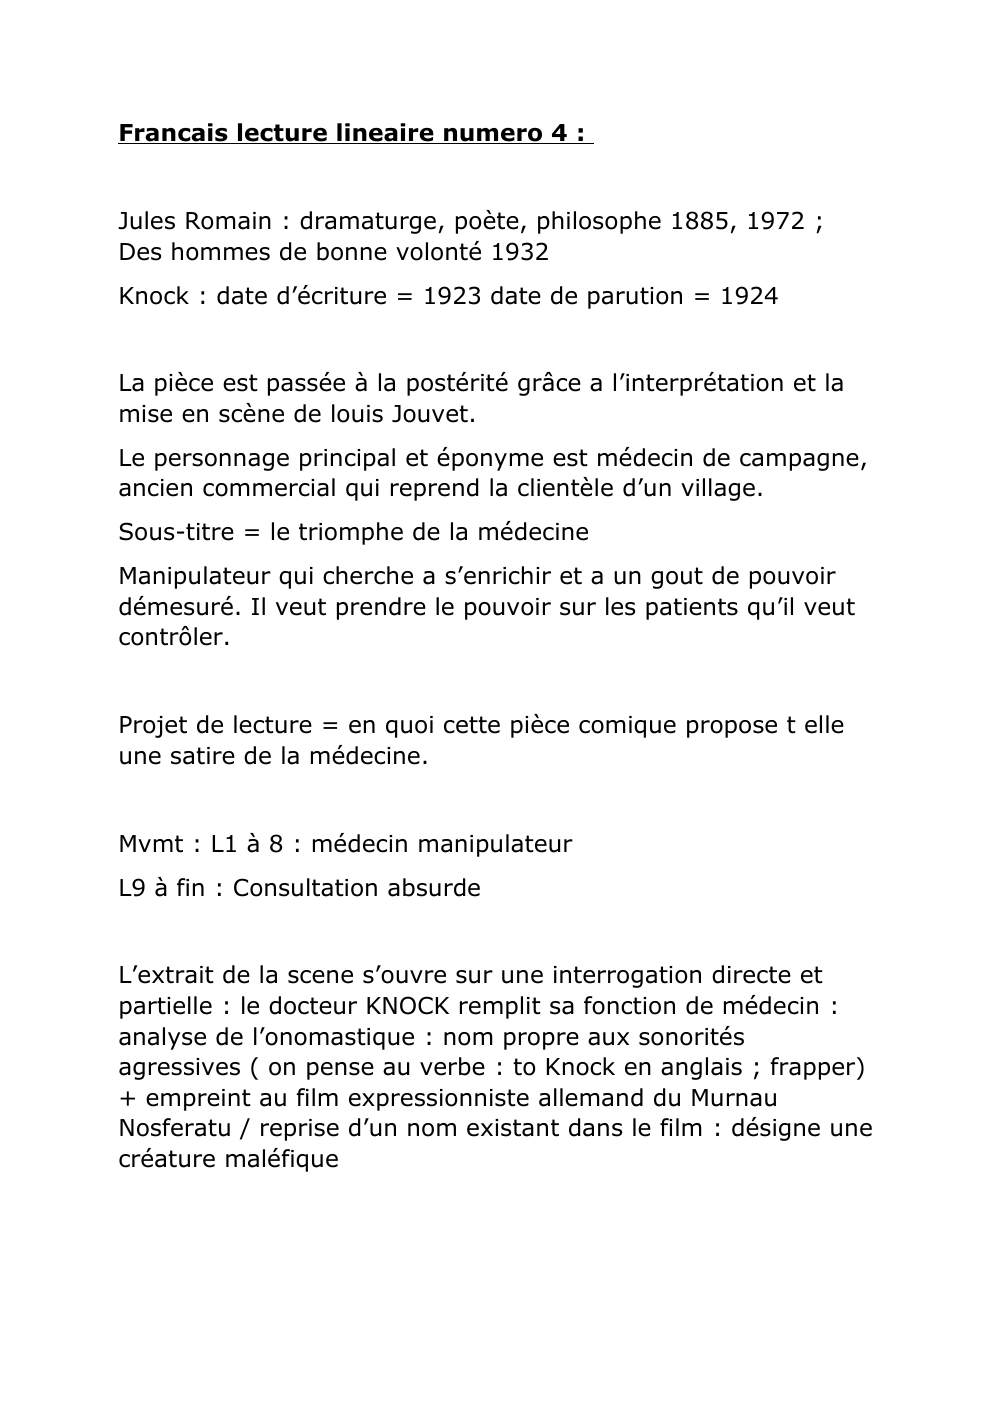 Prévisualisation du document Français lecture linéaire Jules Romain Knock